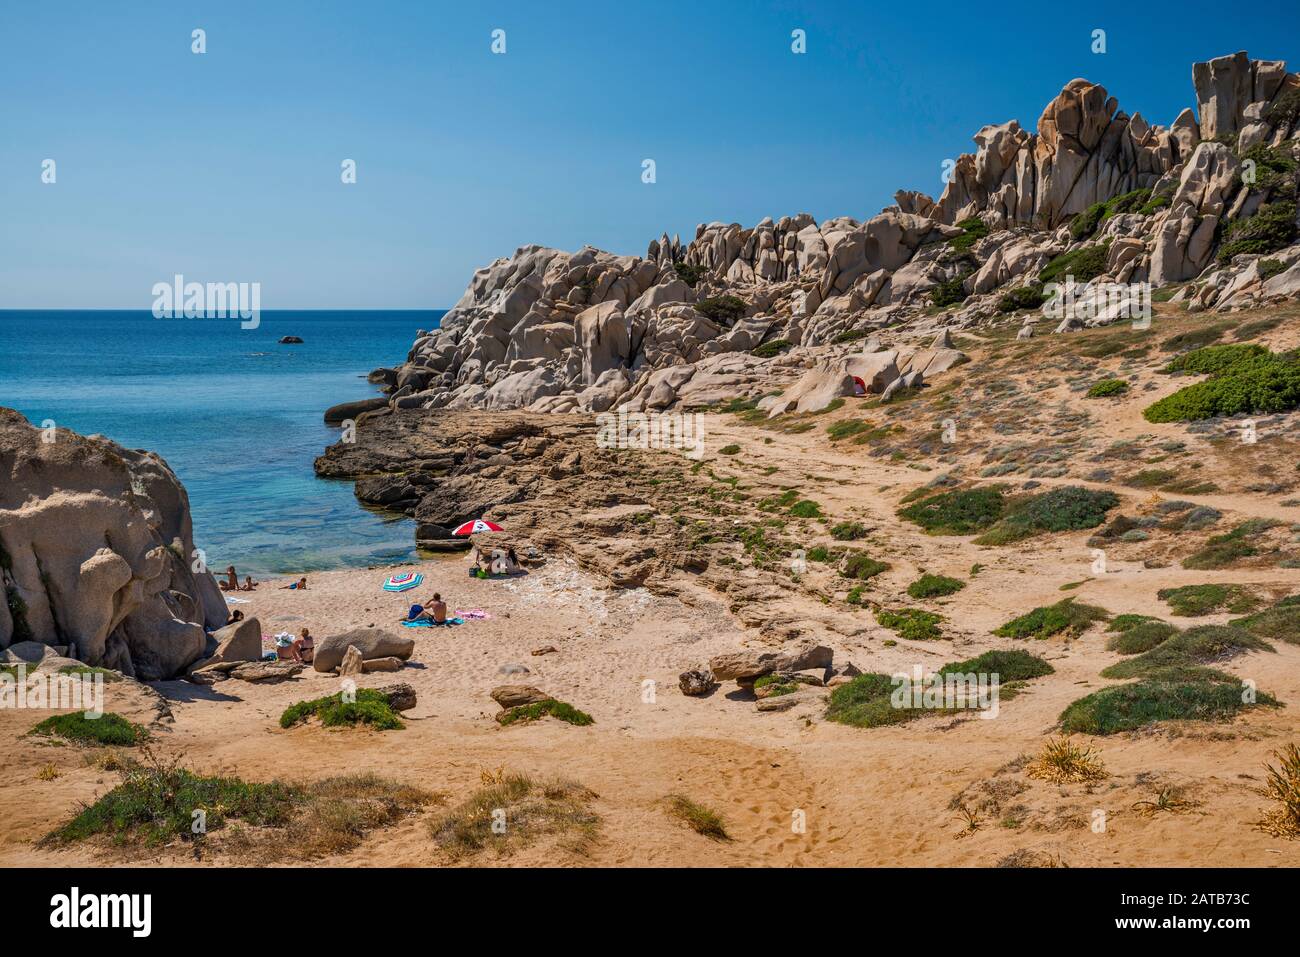 Granite formations over beach at Cala dell'Indiano, Capo Testa, near Santa Teresa di Gallura, Gallura region, Sassari province, Sardinia, Italy Stock Photo